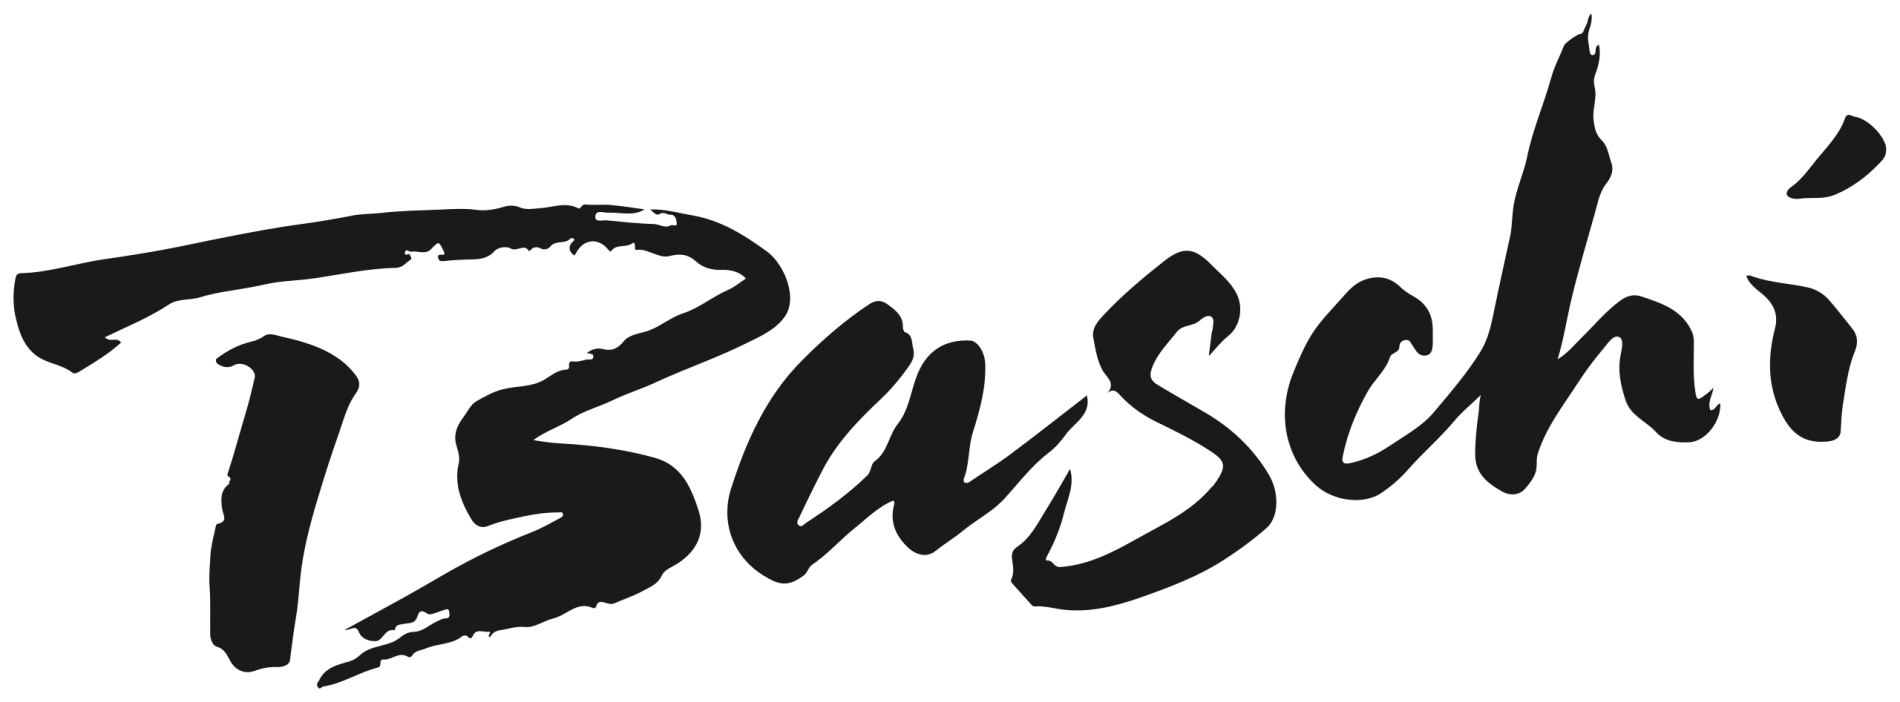 2560px-baschi-logo.svg